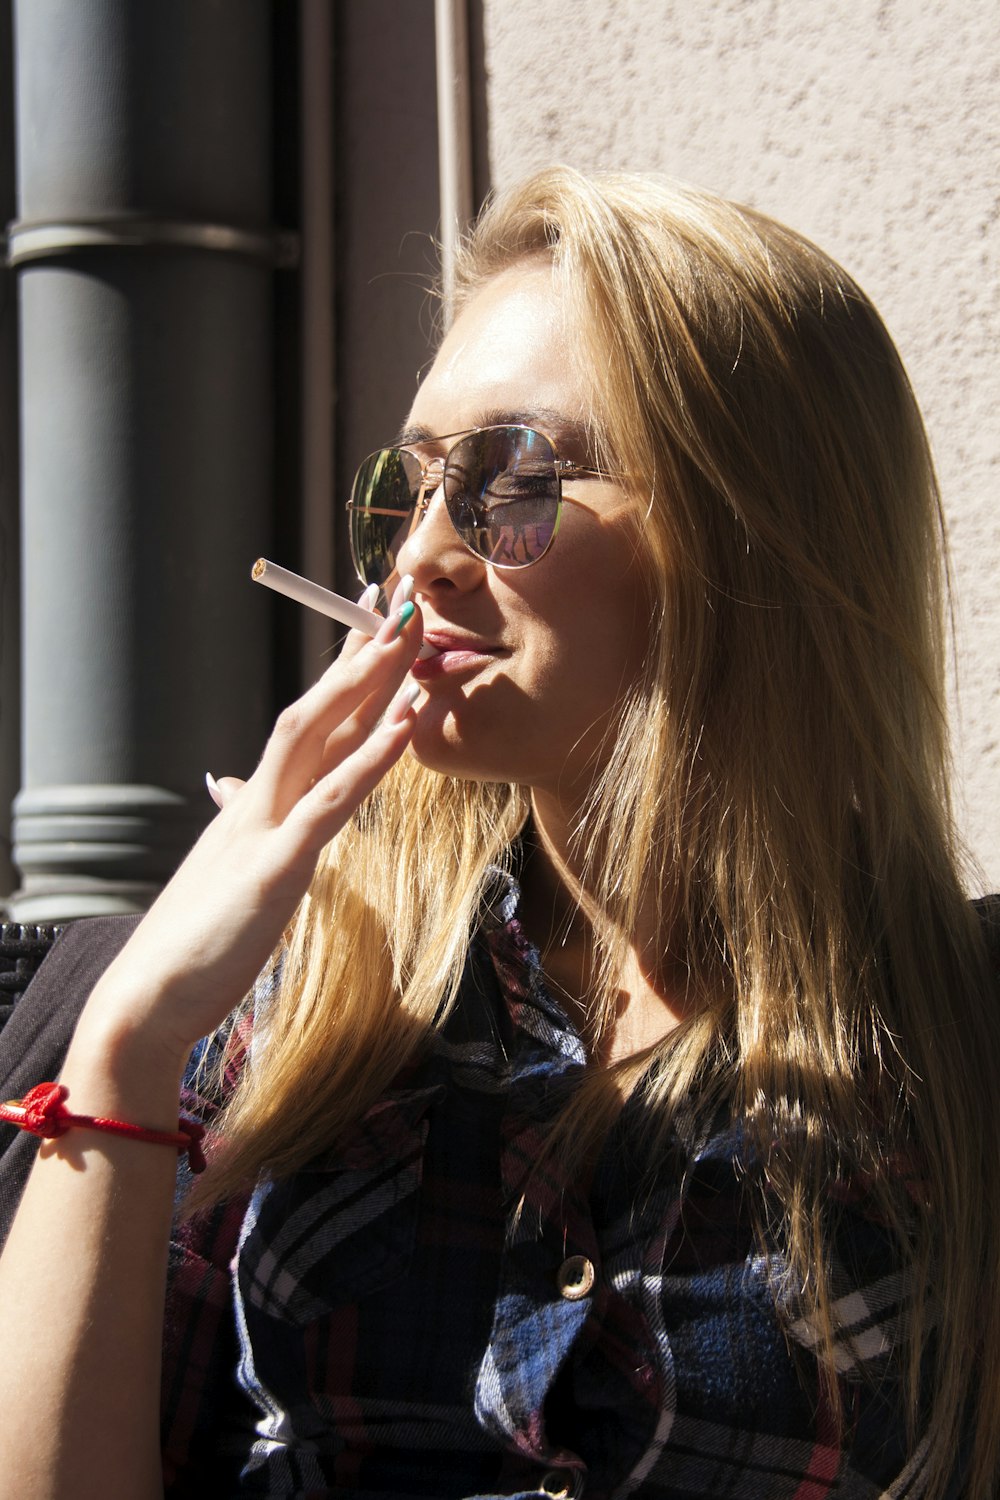 fotografia close-up da mulher segurando o pau do cigarro durante o dia